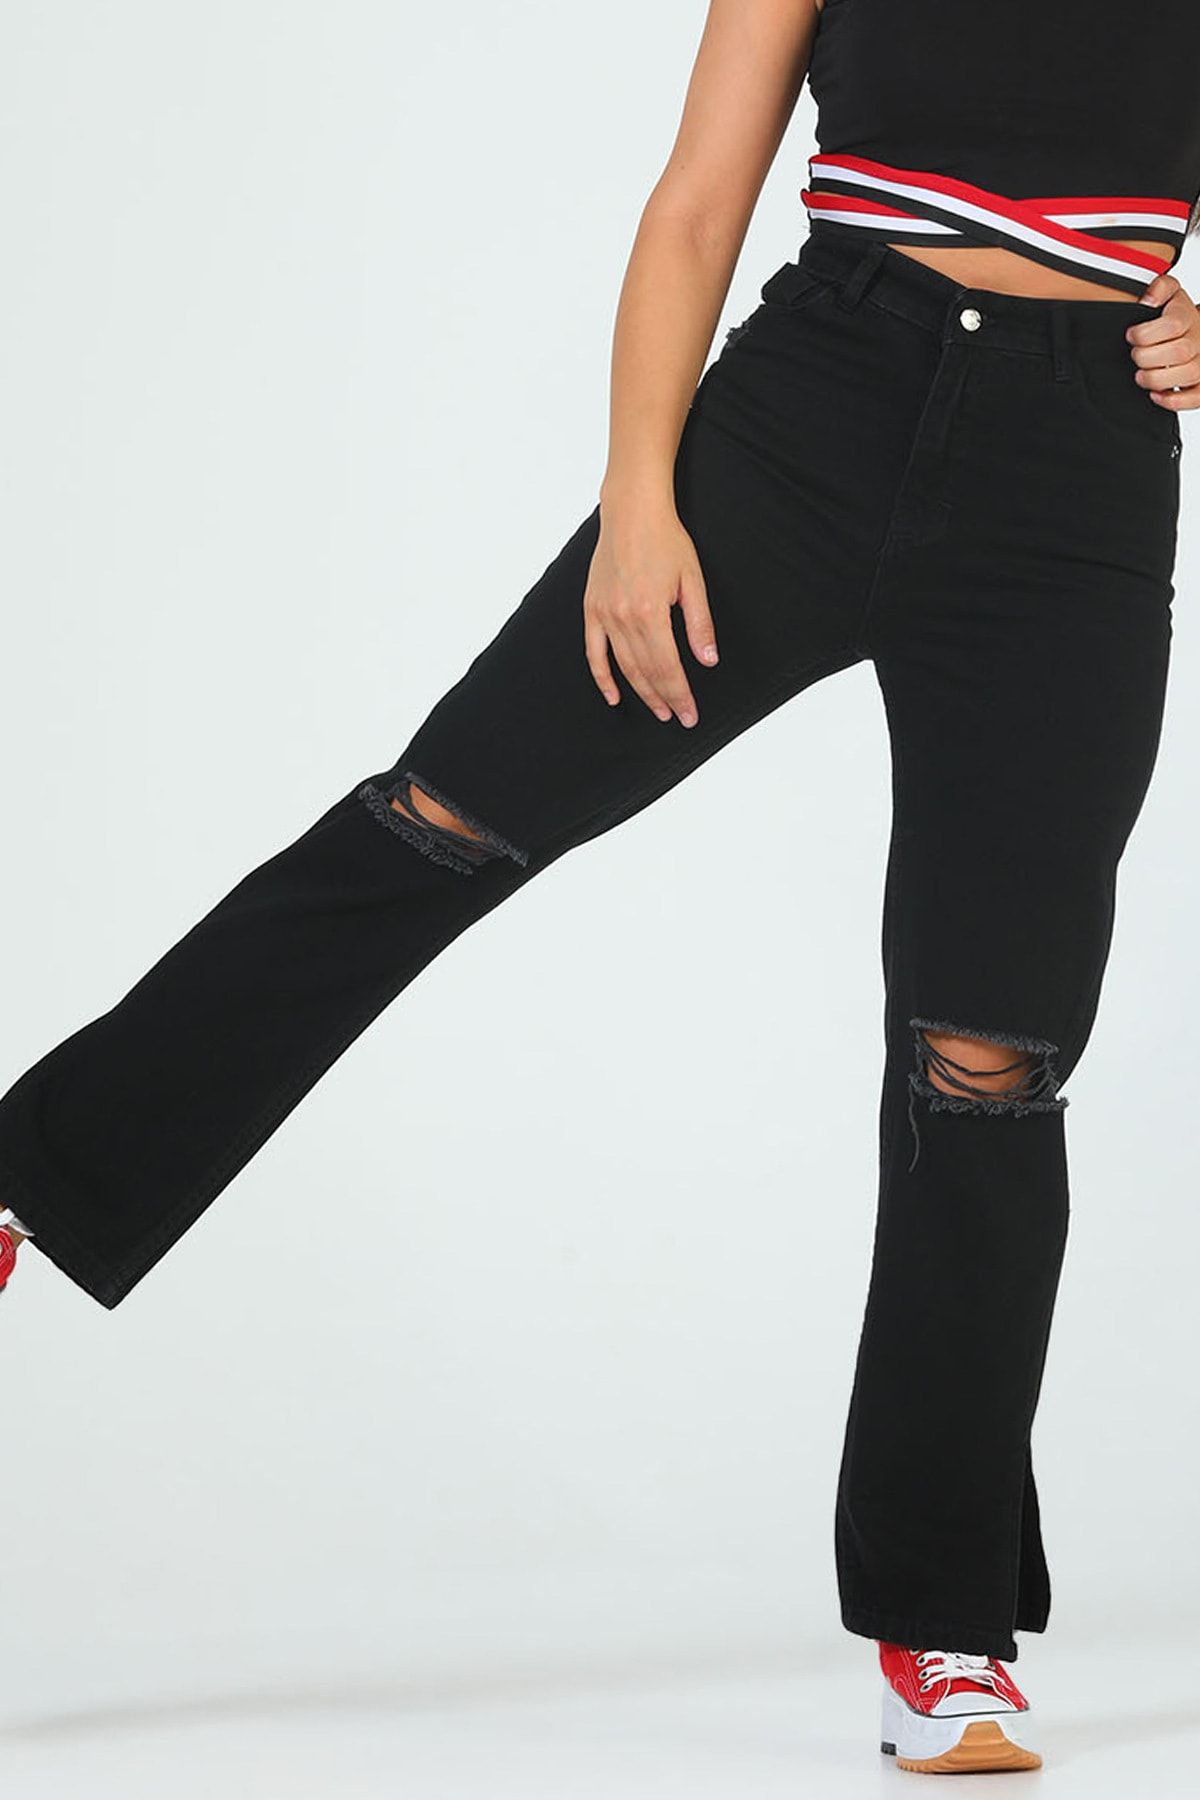 Julude Siyah Kadın Yüksek Bel Yırtmaç Detaylı Yırtıklı Jeans Pantolon